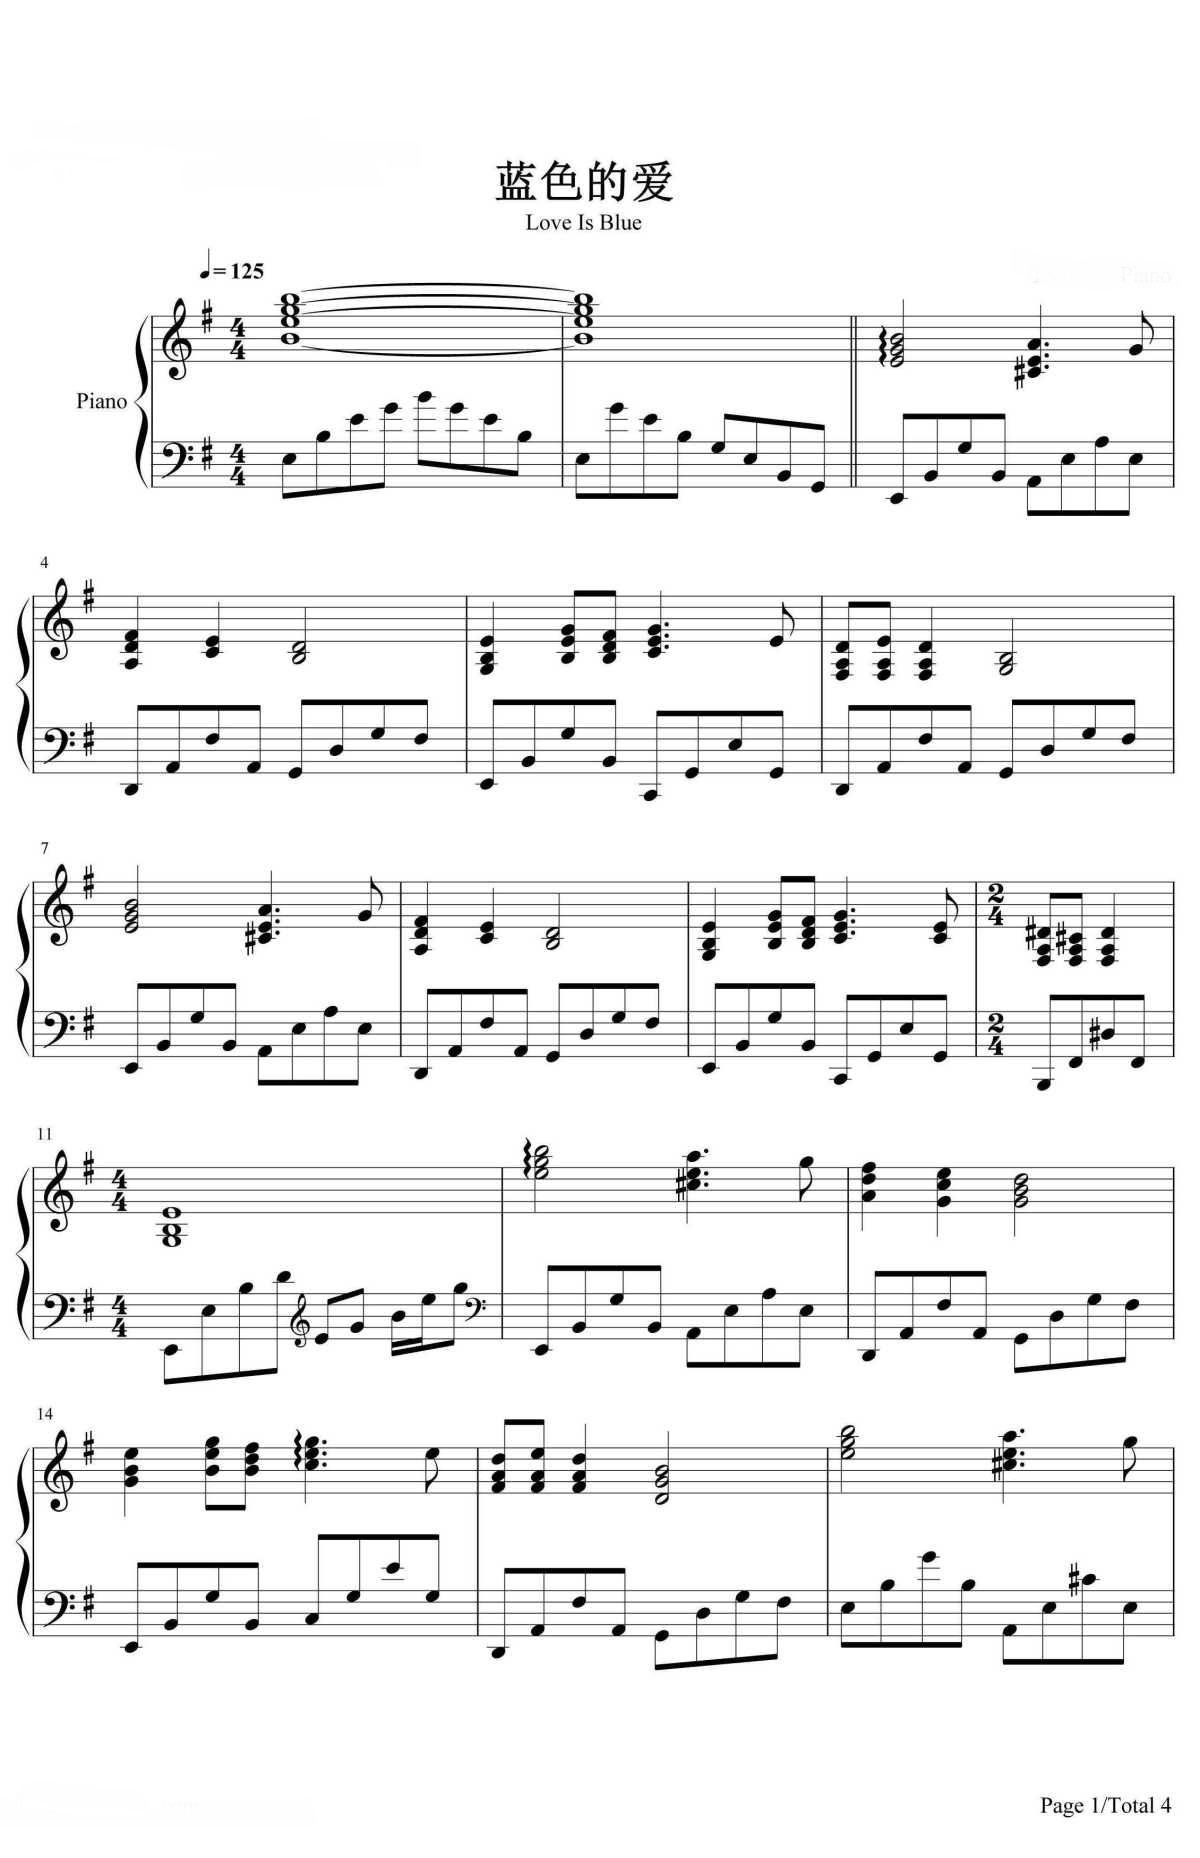 《蓝色的爱》的钢琴谱钢琴曲谱 - Richard Clayderman